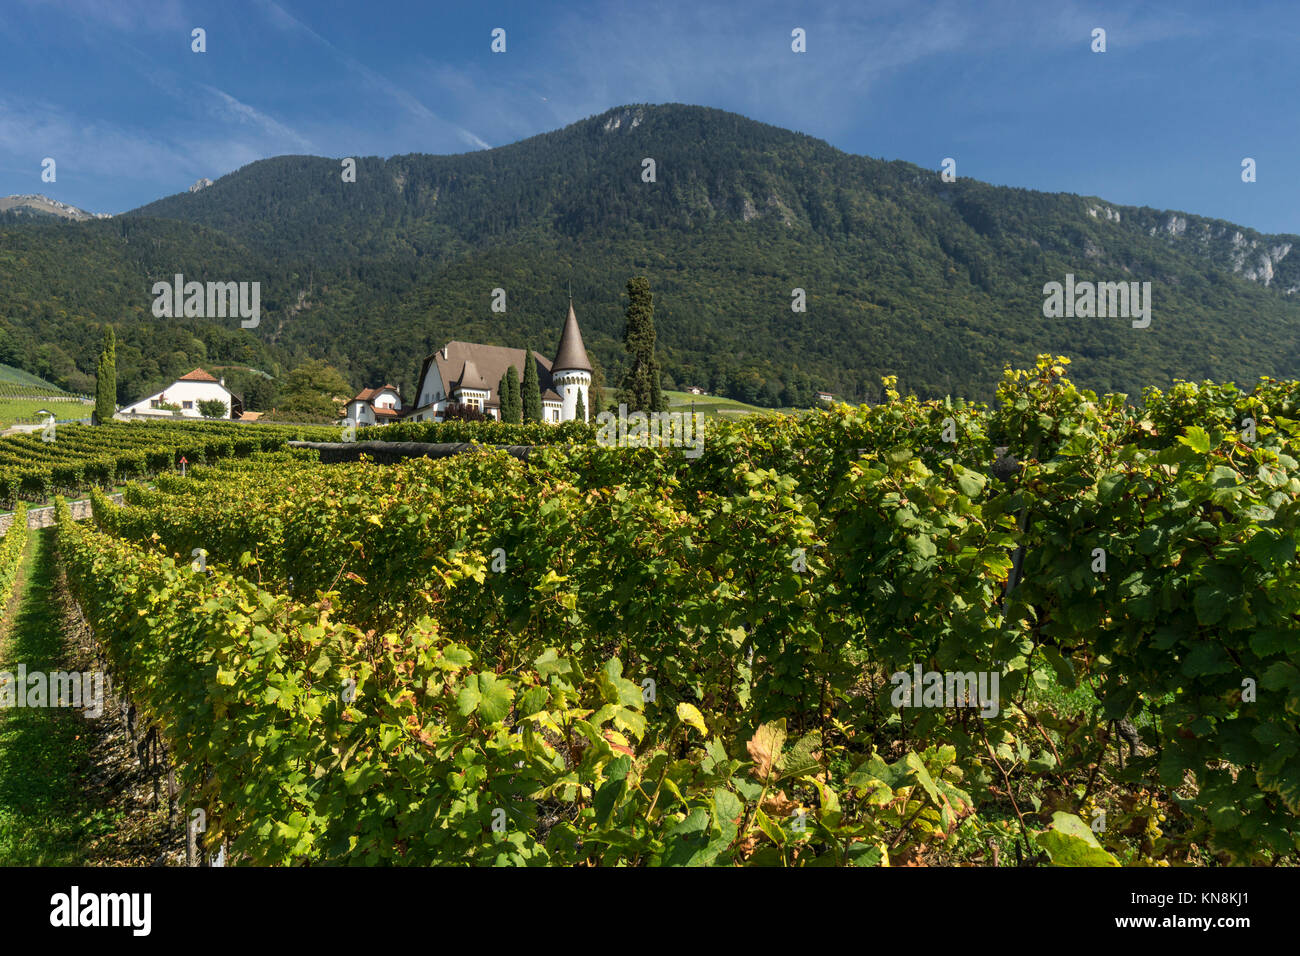 Château Maison Blanche, Yvorne, vignobles , région de Lavaux, le lac de Genève, Swiss Alps, Suisse Banque D'Images